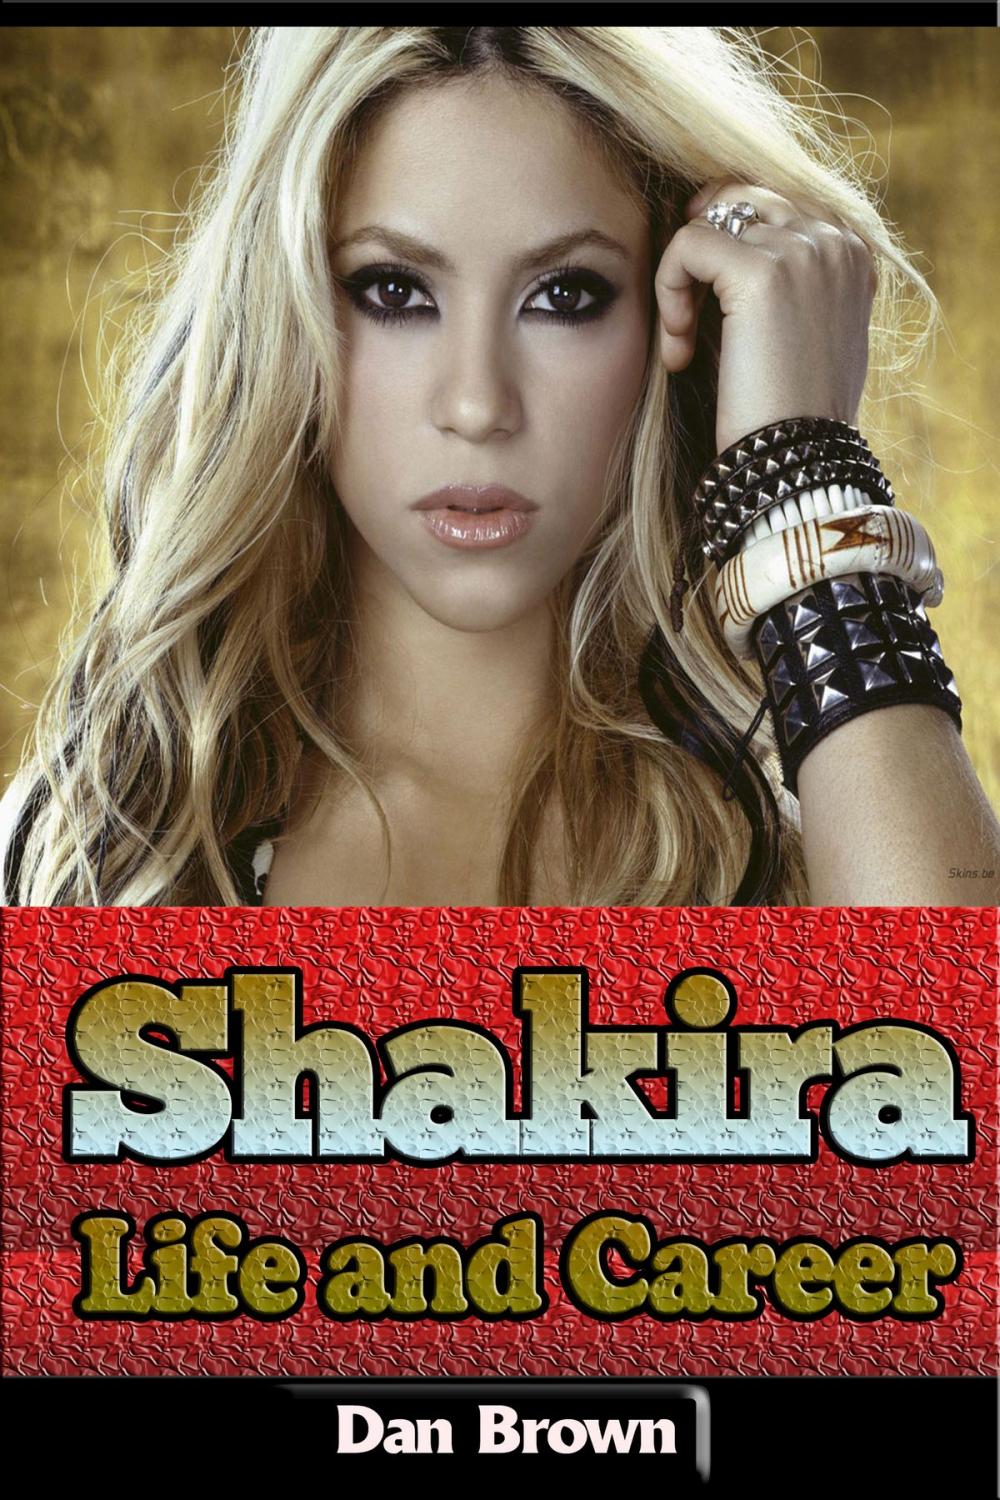 Big bigCover of Shakira – Life and Career